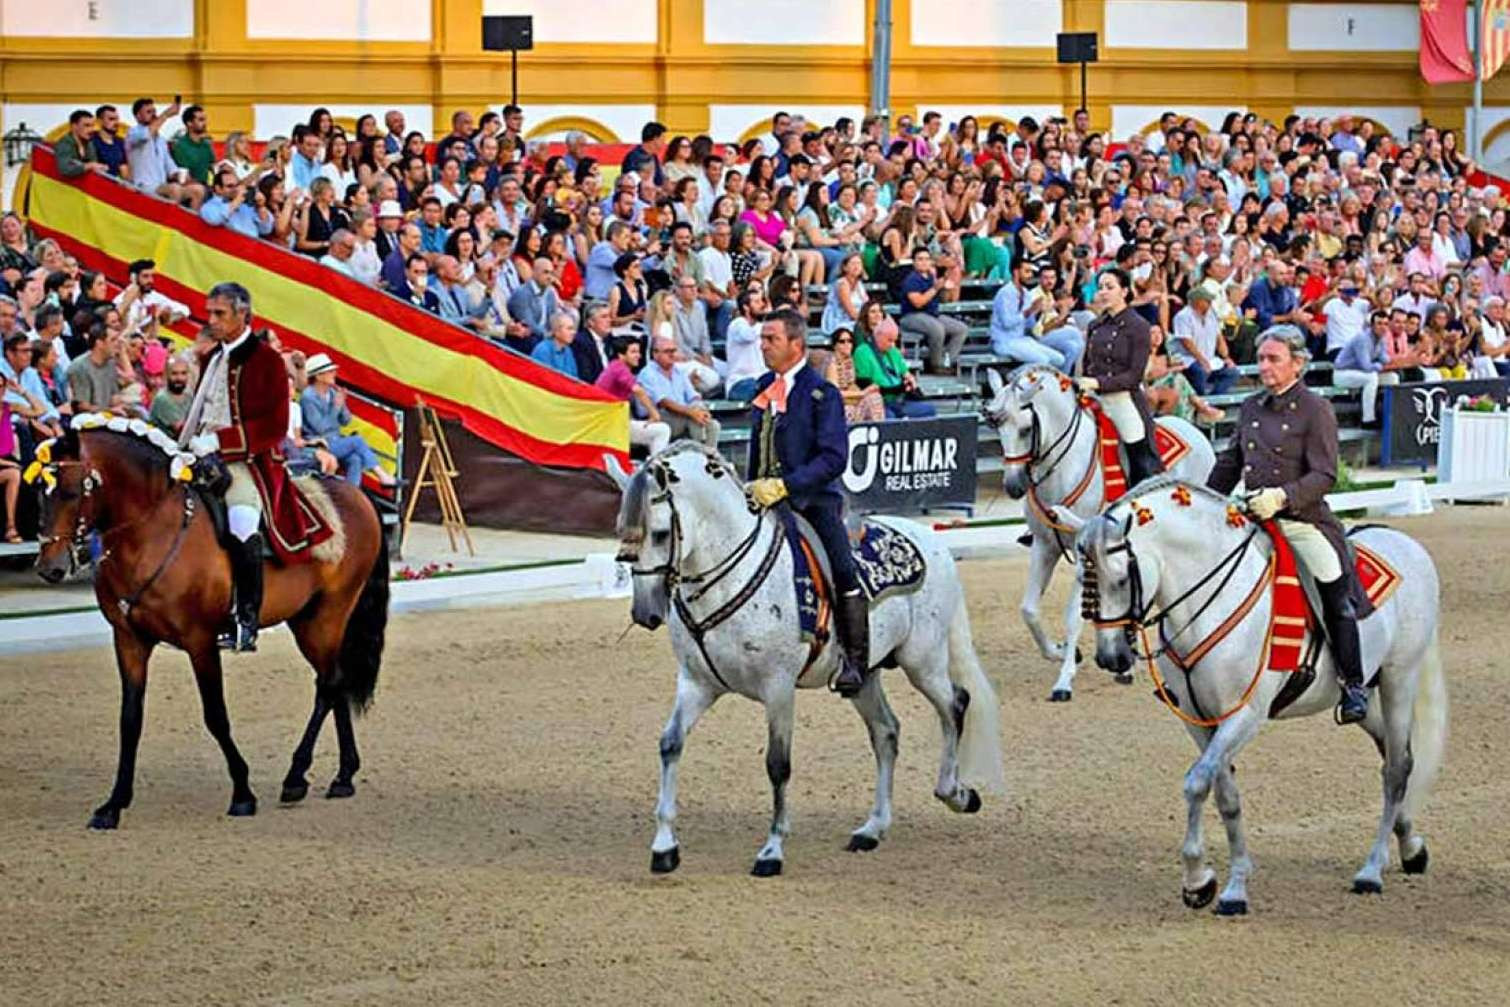  GILMAR Real Estate patrocina la Gala V Escuelas de Jerez 